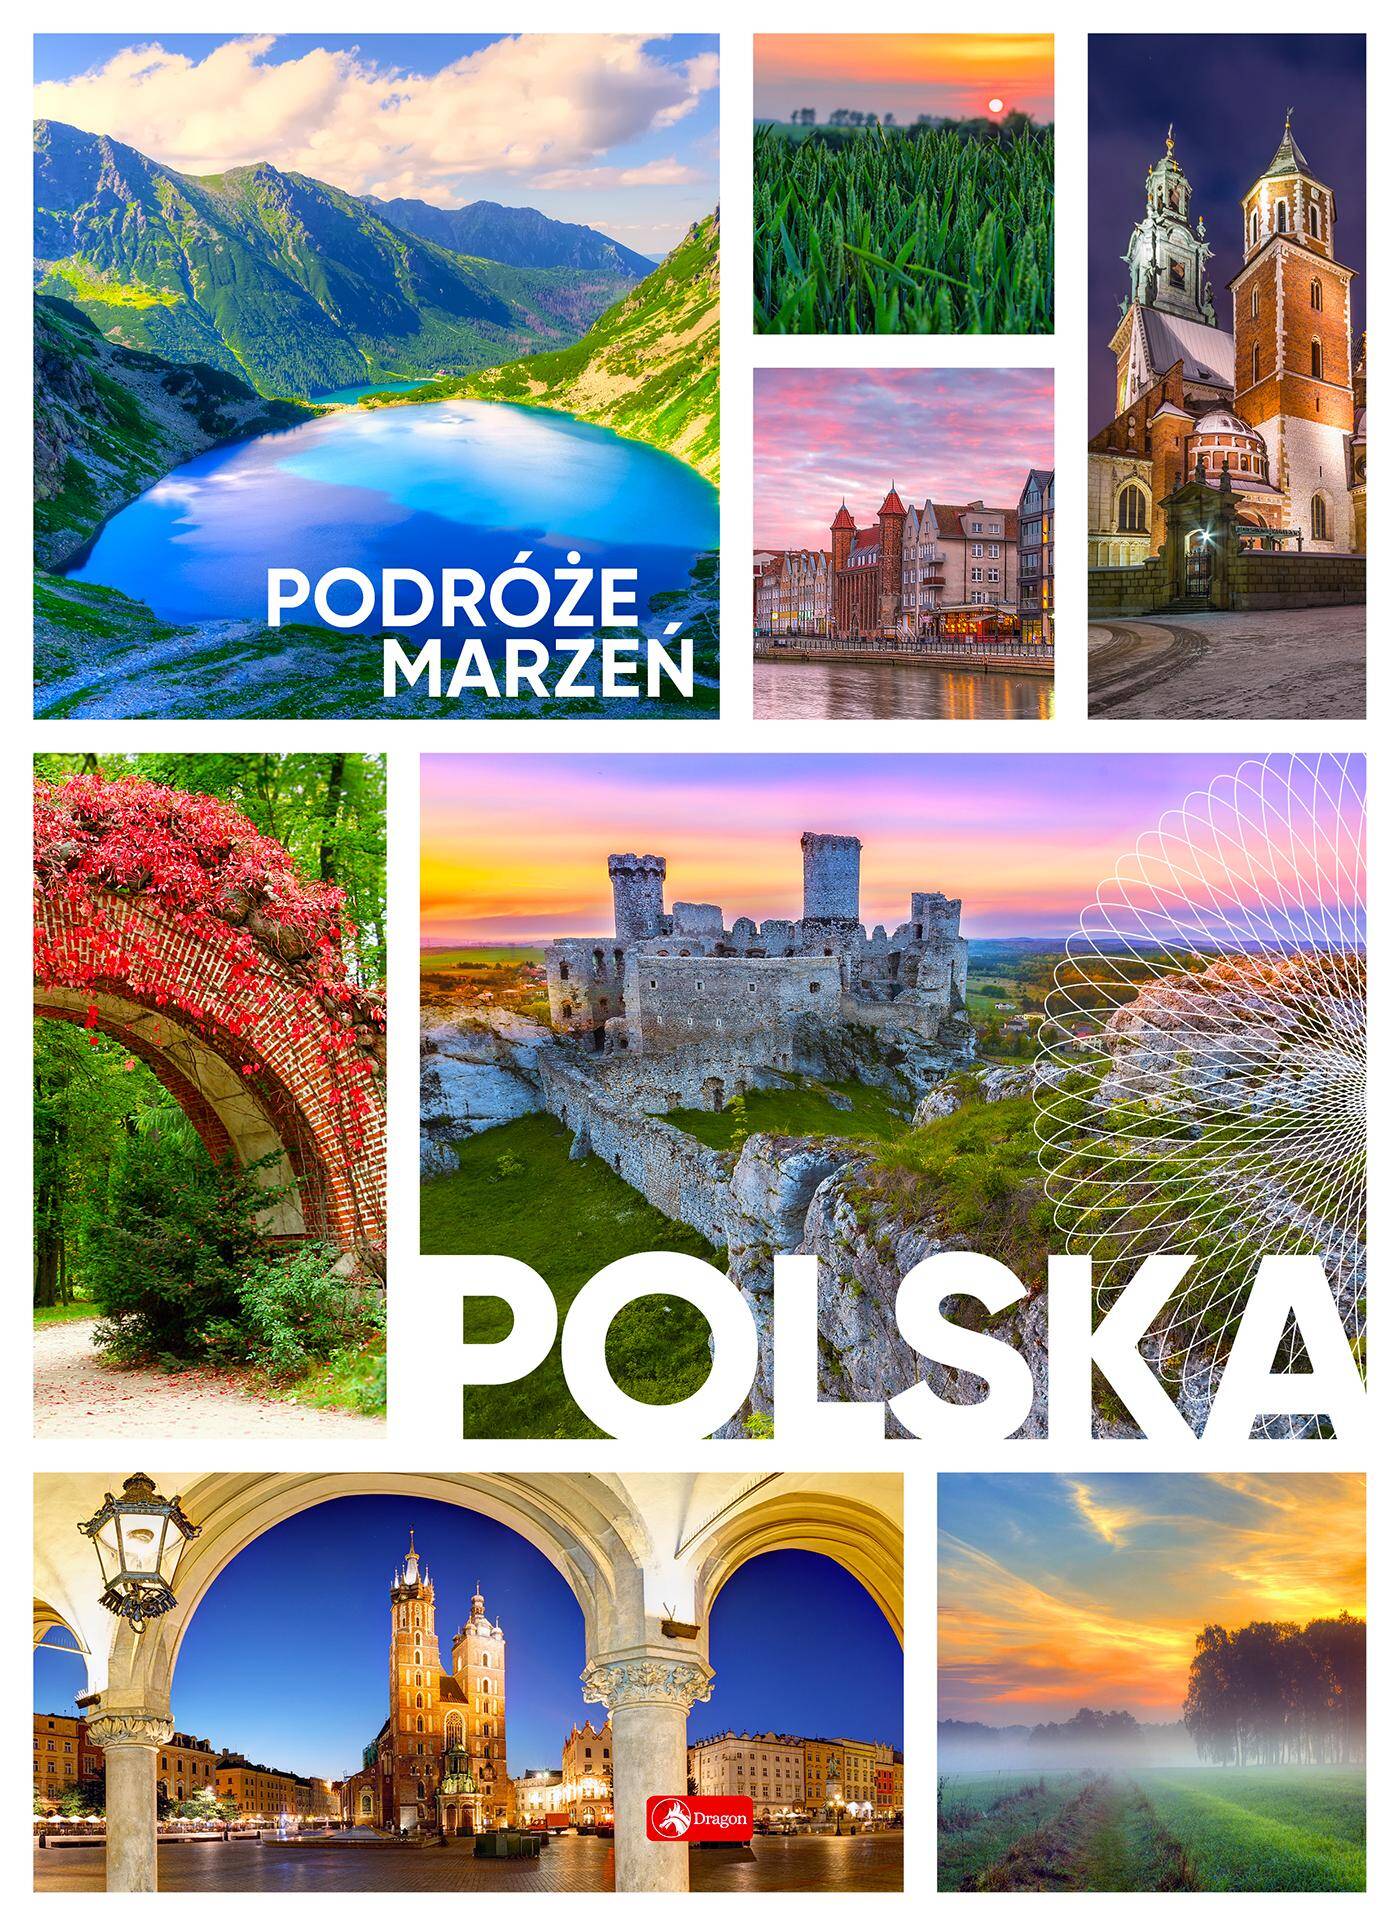 Podróże marzeń. Polska wyd. 2022